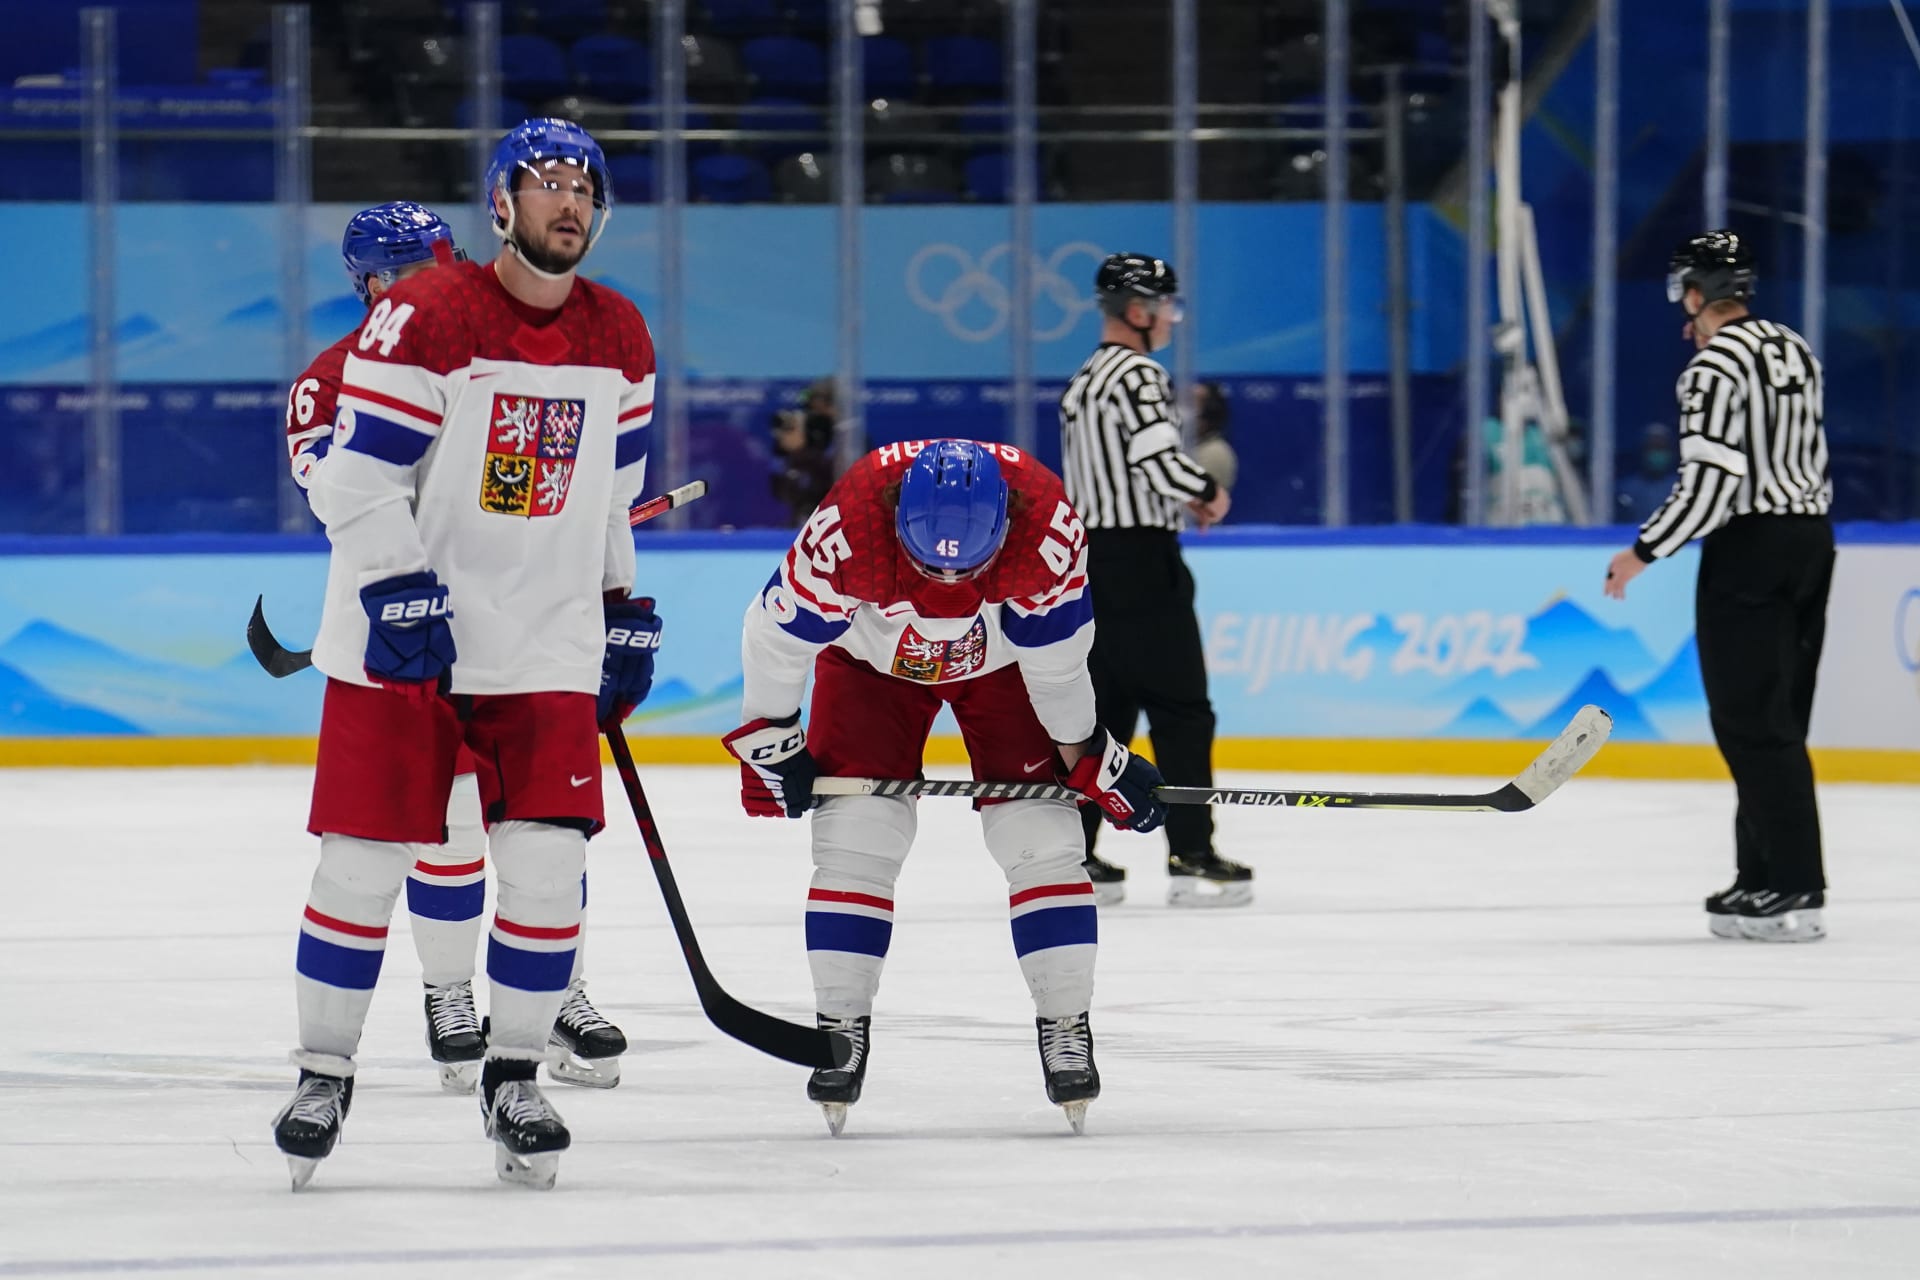 Čeští hokejisté se nedostali přes předkolo play-off, když podlehli Švýcarsku 2:4.